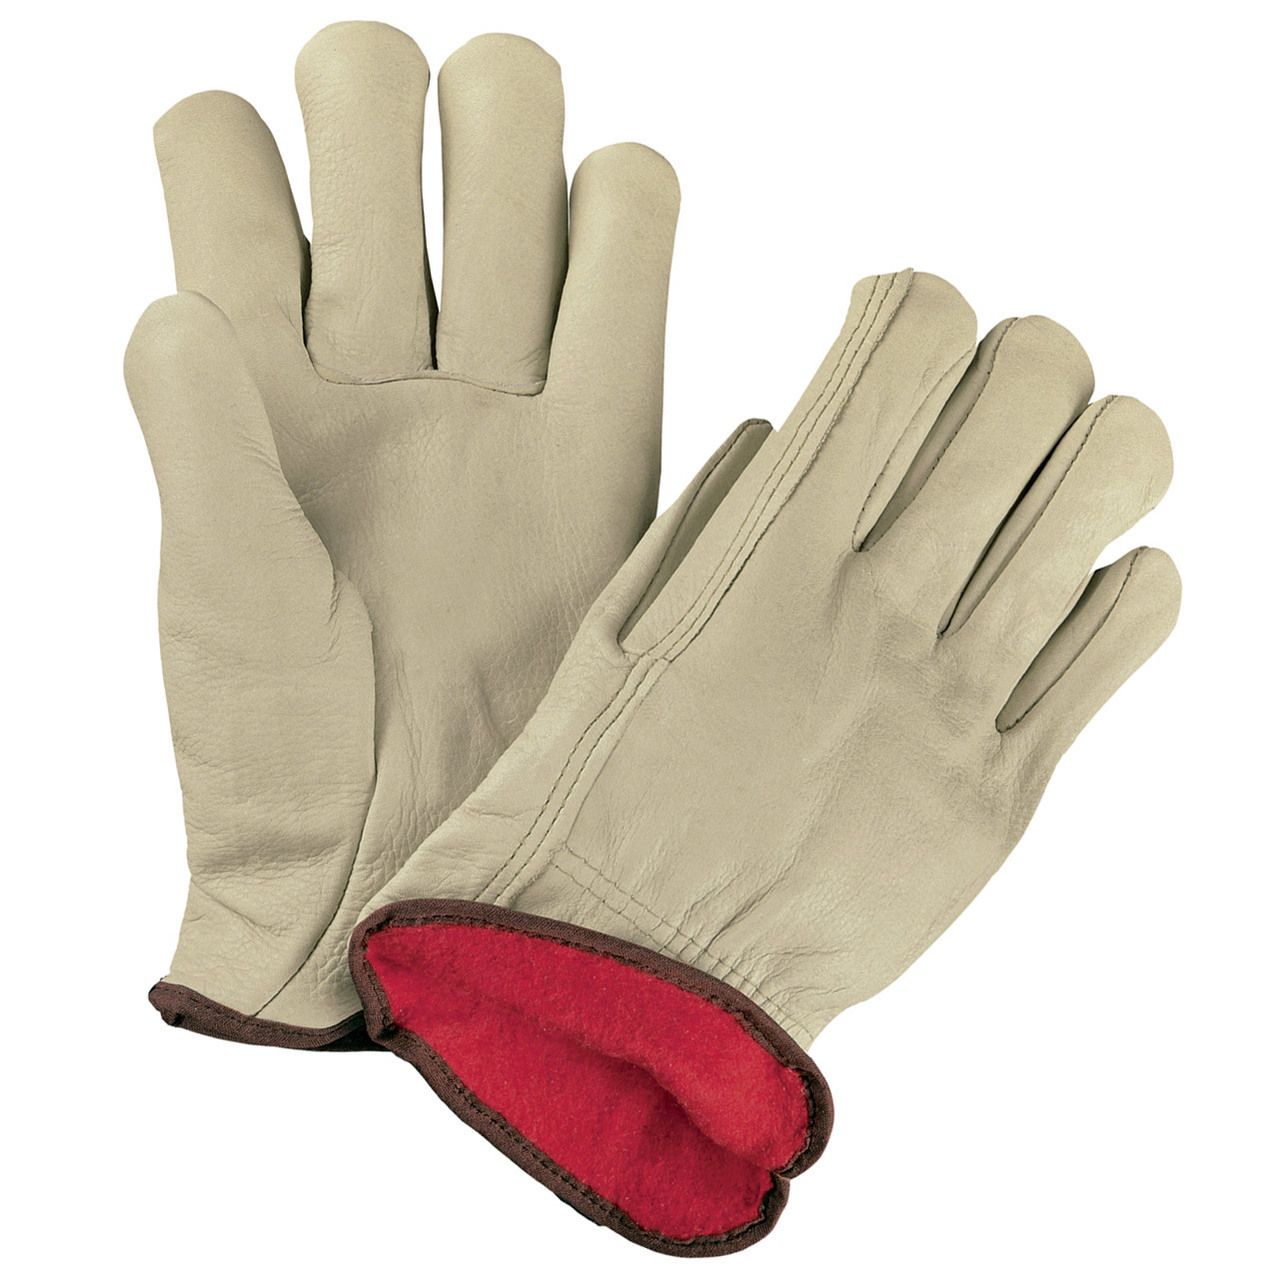 Snazz reccomend gloves Road hustler leather